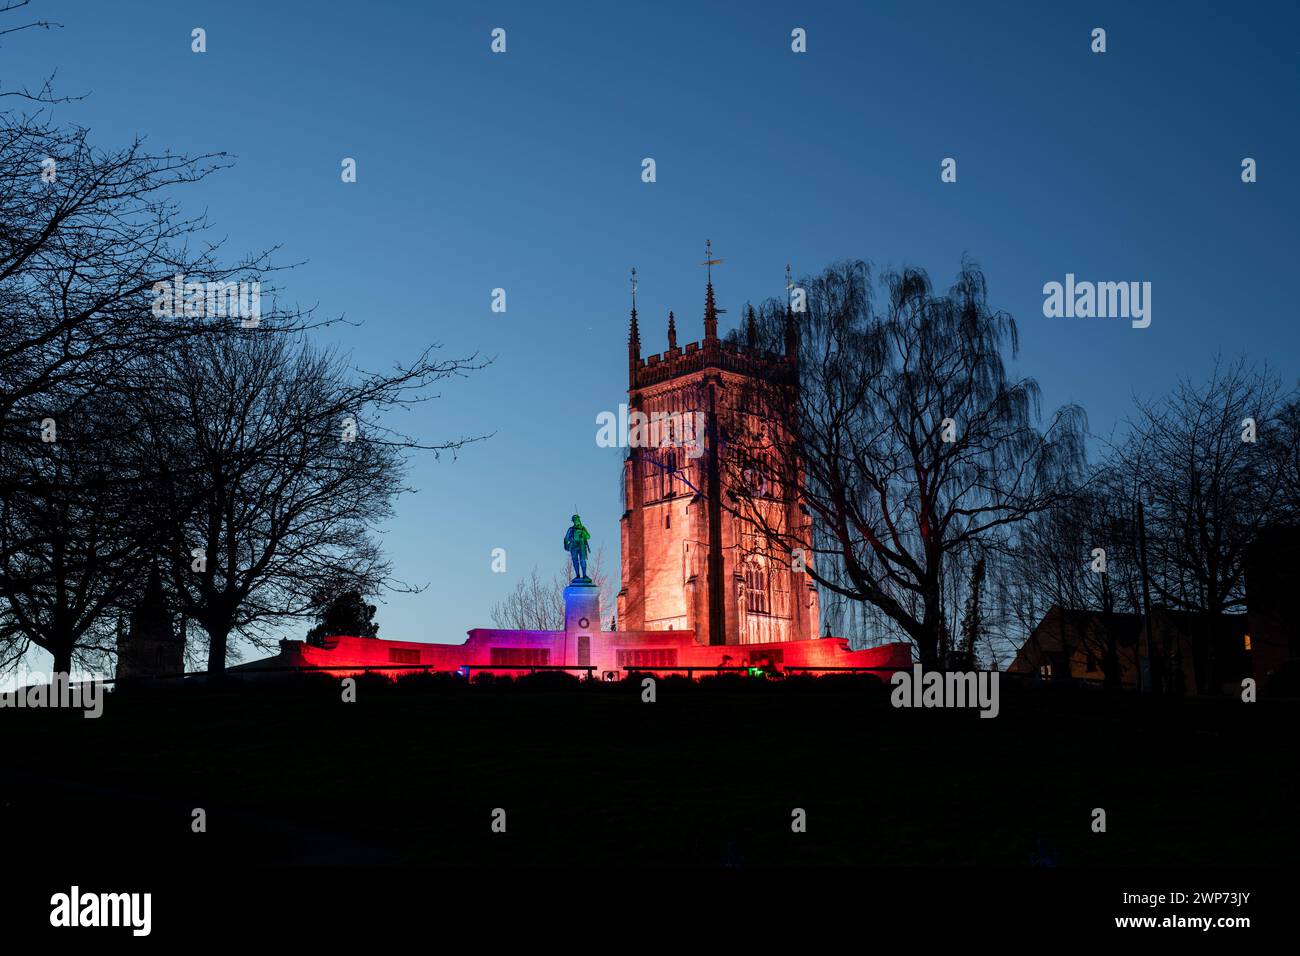 Mémorial de guerre d'Evesham et clocher en mars au crépuscule. Evesham, Wychavon, Worchestershire, Angleterre Banque D'Images